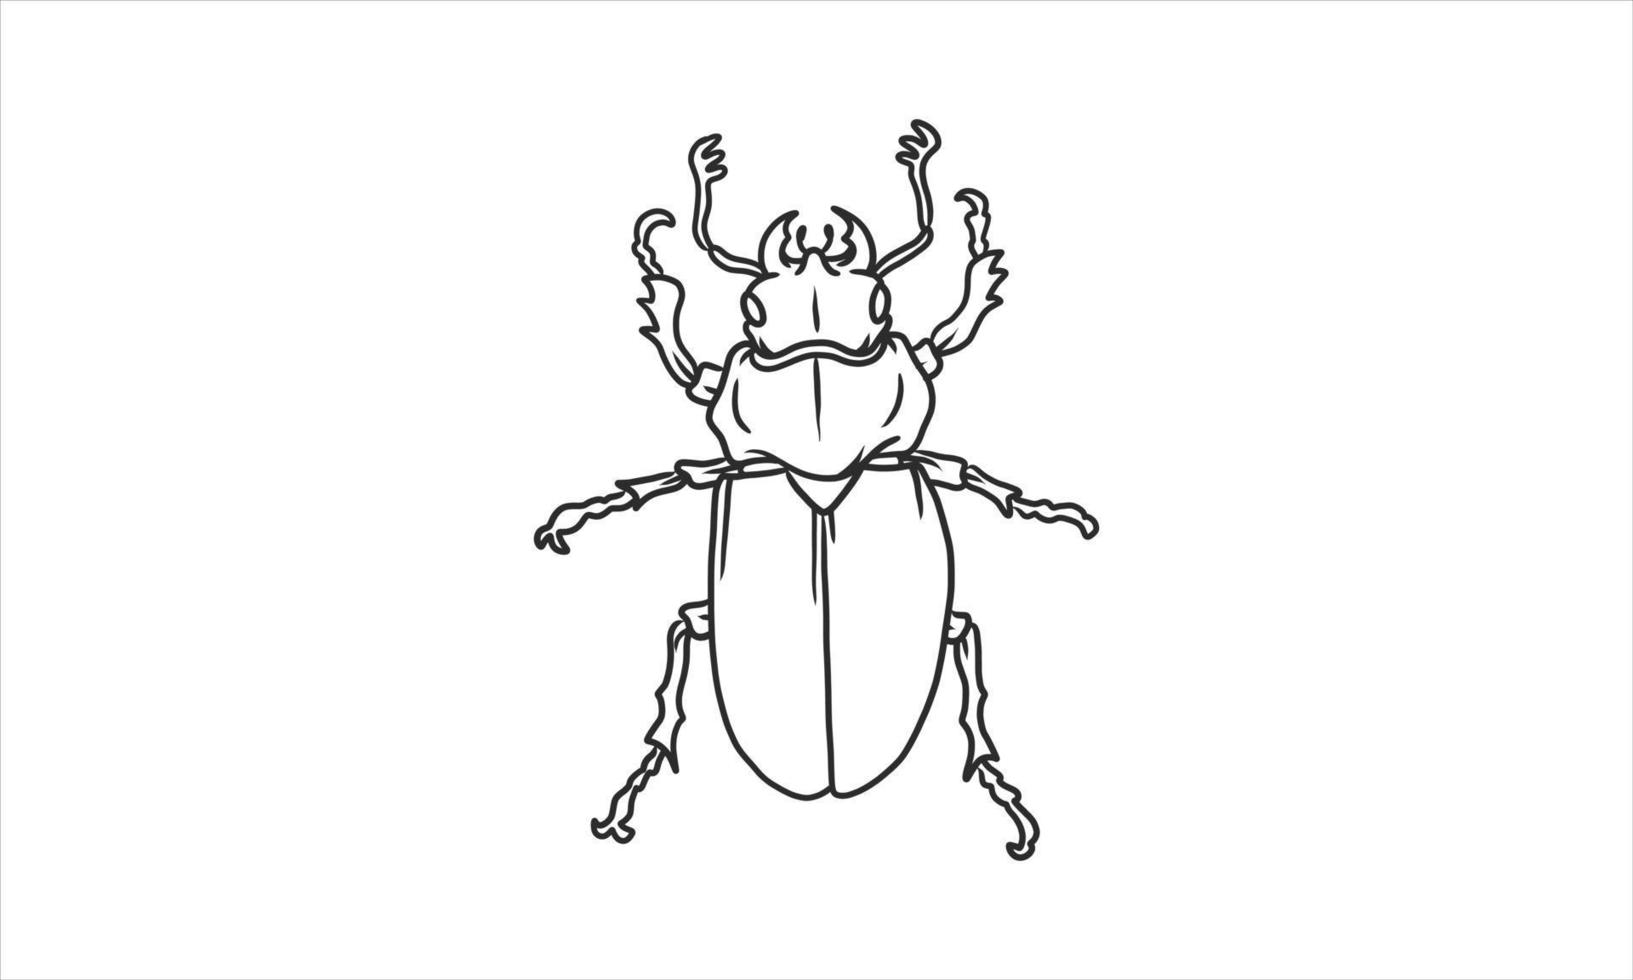 Ilustração em vetor Lineart de besouros em fundo branco, desenho à mão japonês besouro chifrudo inseto inseto